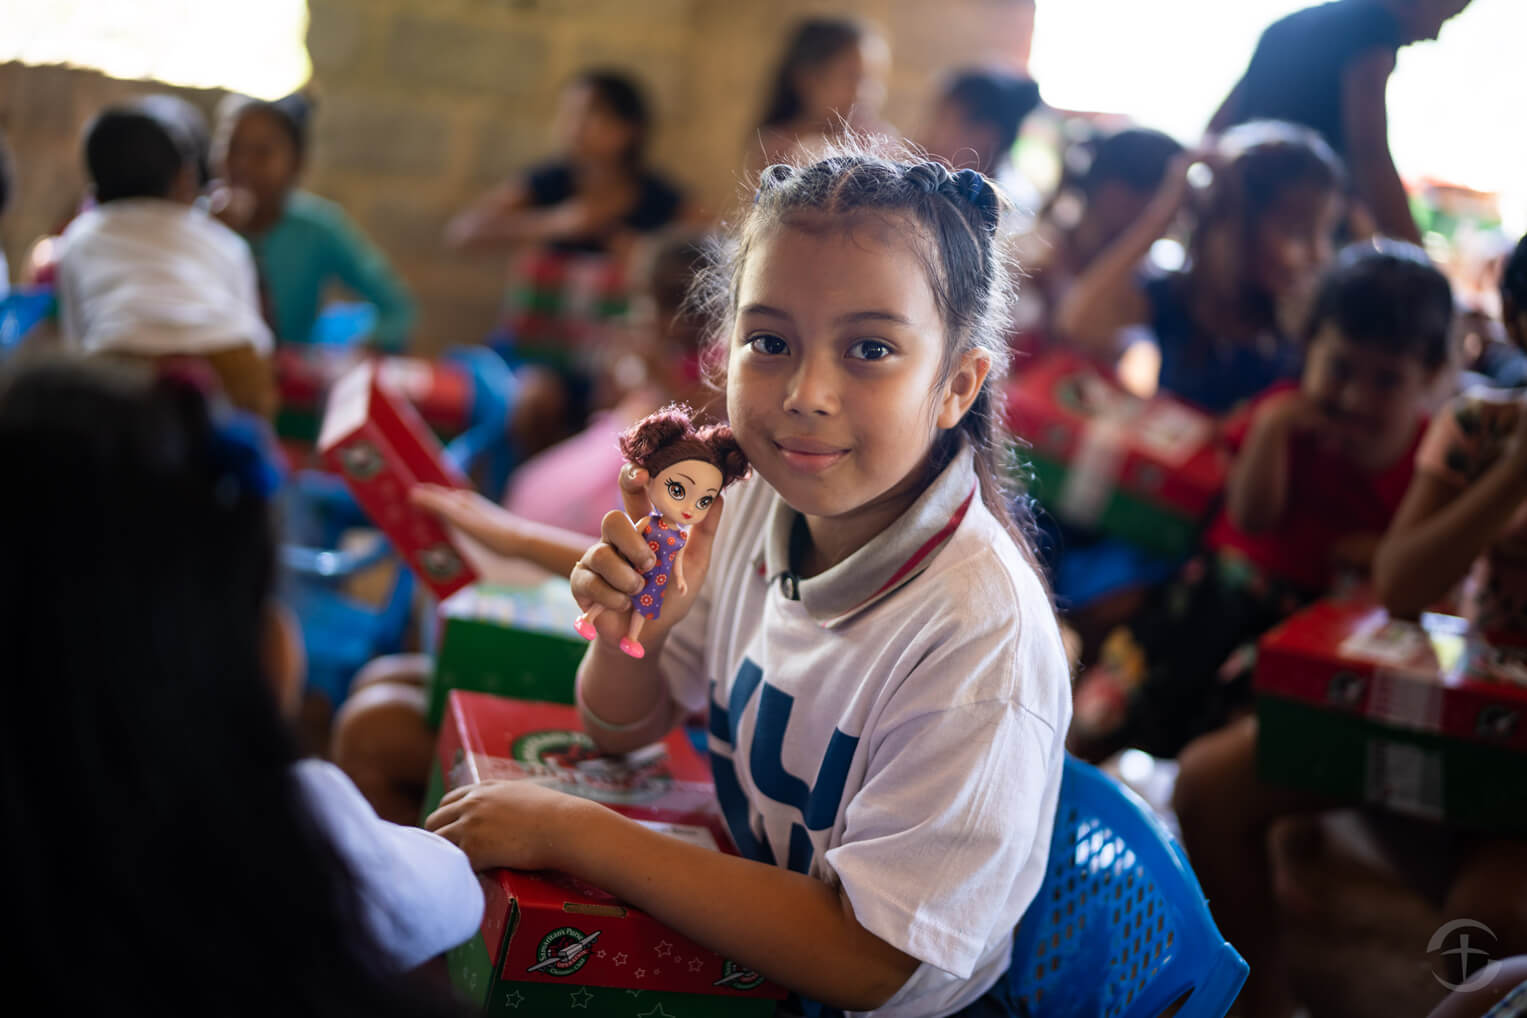 Cerca de 350 000 niños reciben cajas de regalos de Operation Christmas Child en Honduras cada año. El año pasado se recogieron más de 10.5 millones de cajas para distribución mundial.